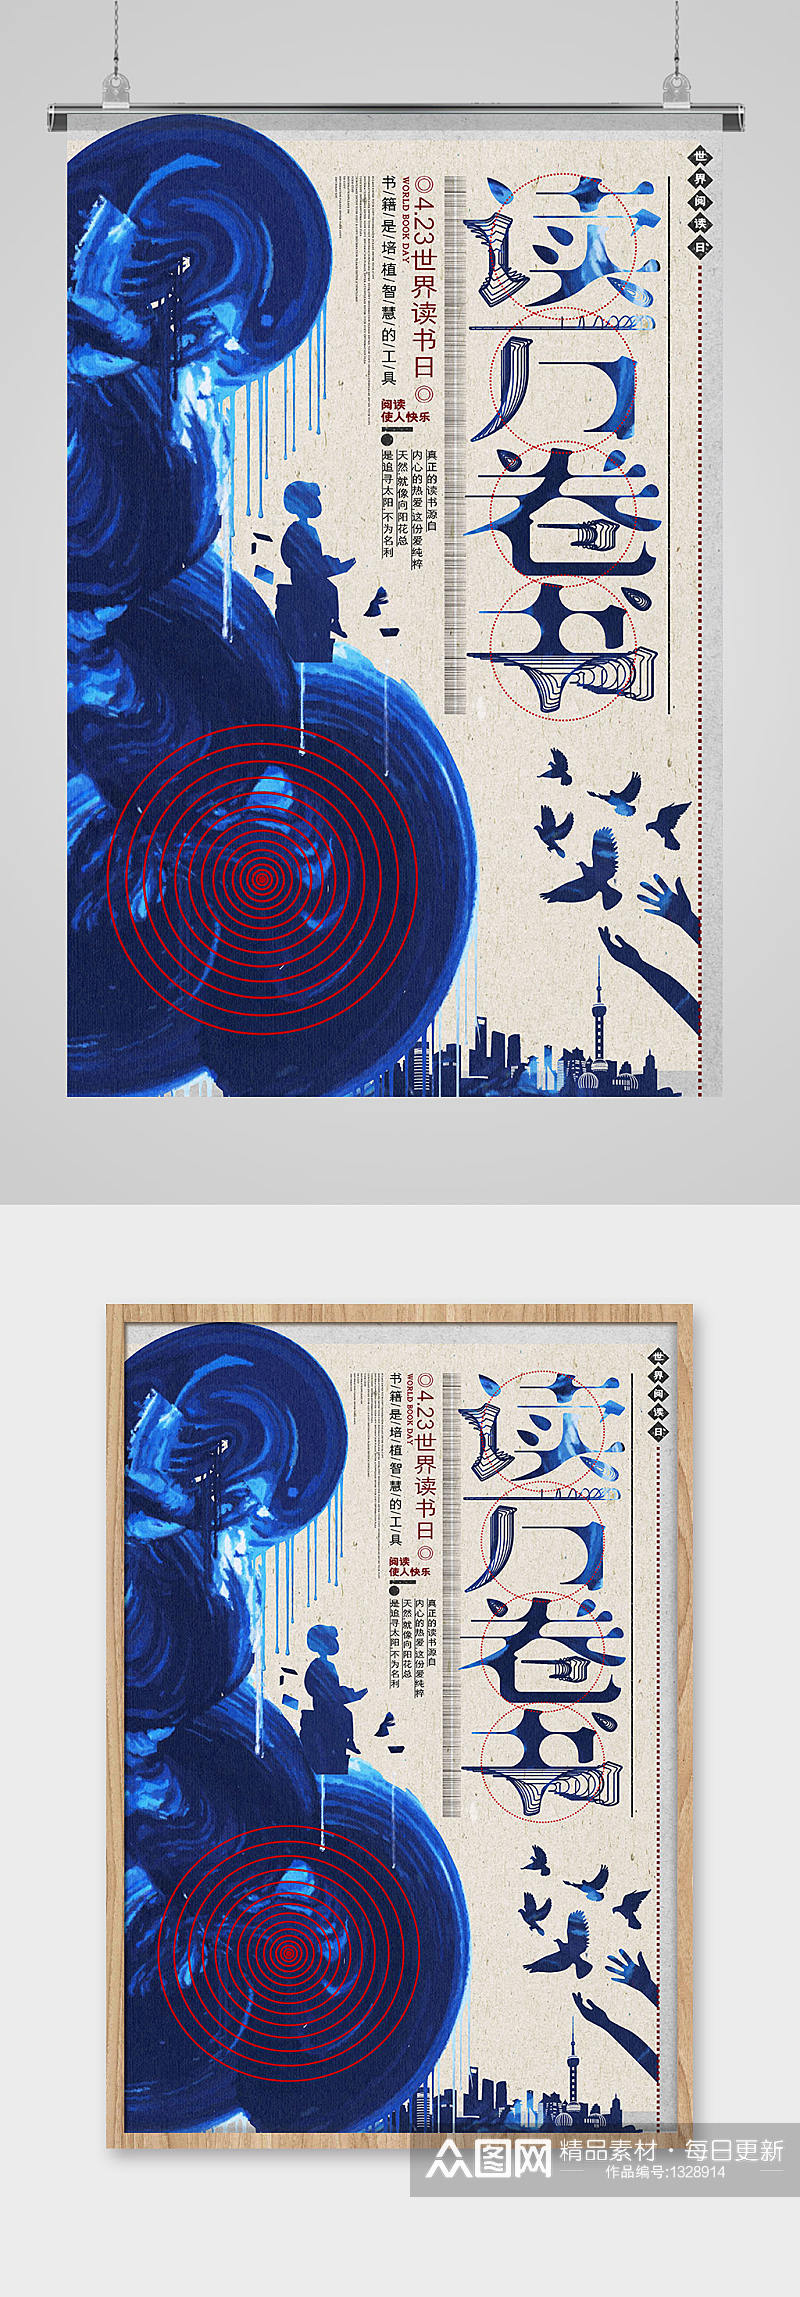 蓝色创意读万卷书世界读书日海报设计素材